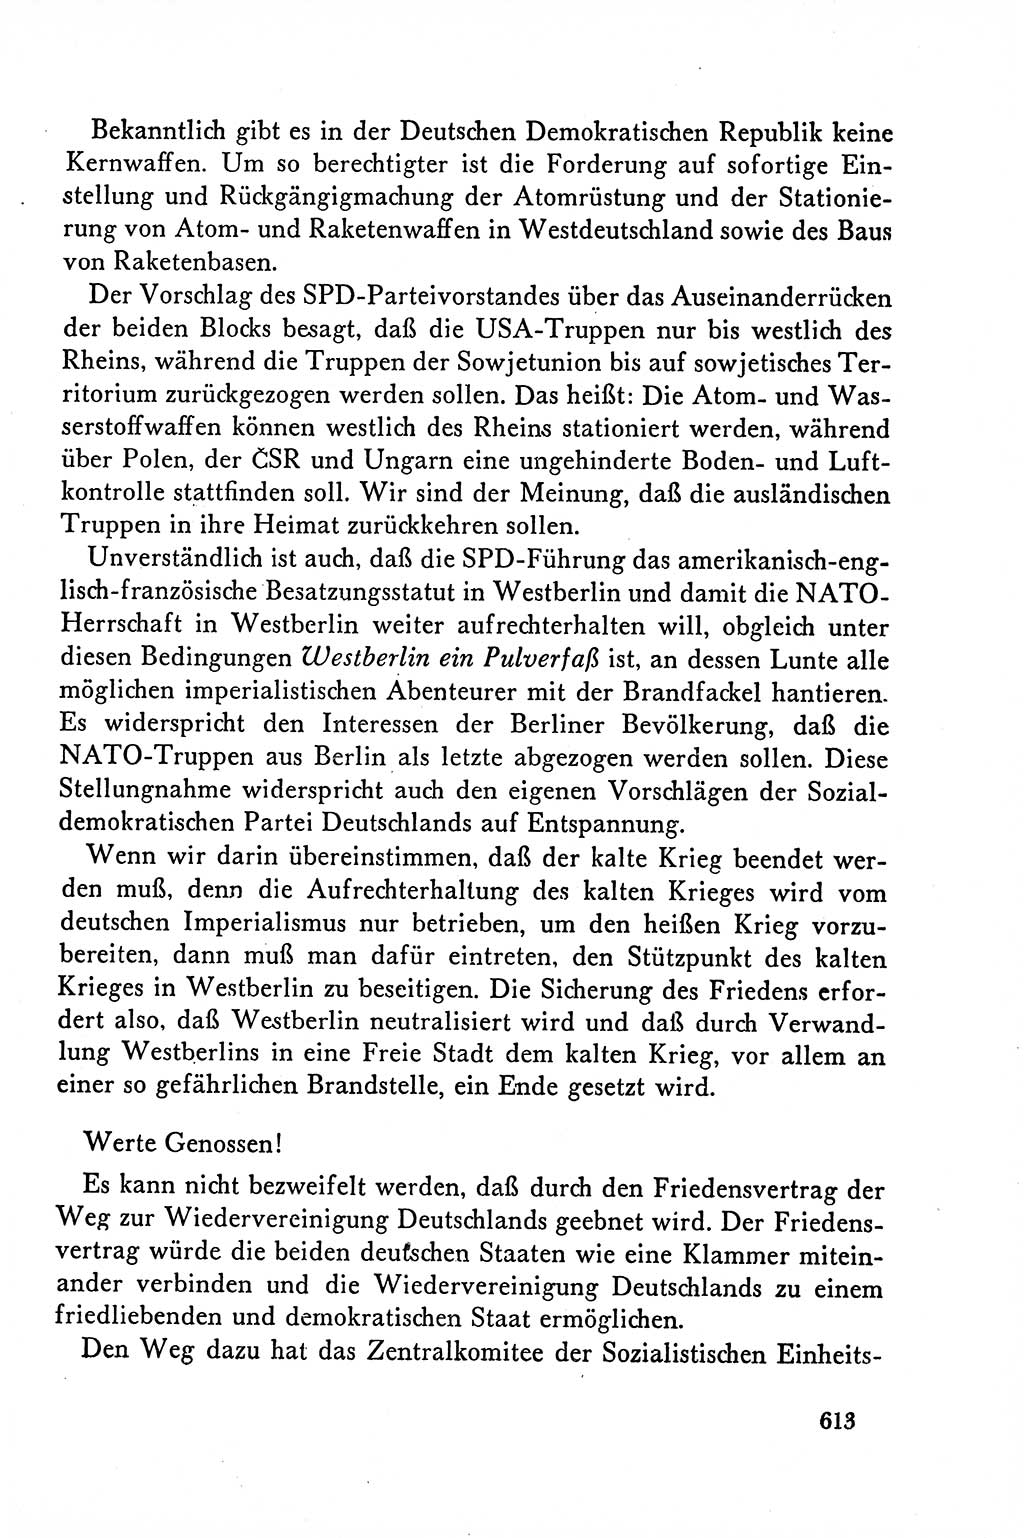 Dokumente der Sozialistischen Einheitspartei Deutschlands (SED) [Deutsche Demokratische Republik (DDR)] 1958-1959, Seite 613 (Dok. SED DDR 1958-1959, S. 613)